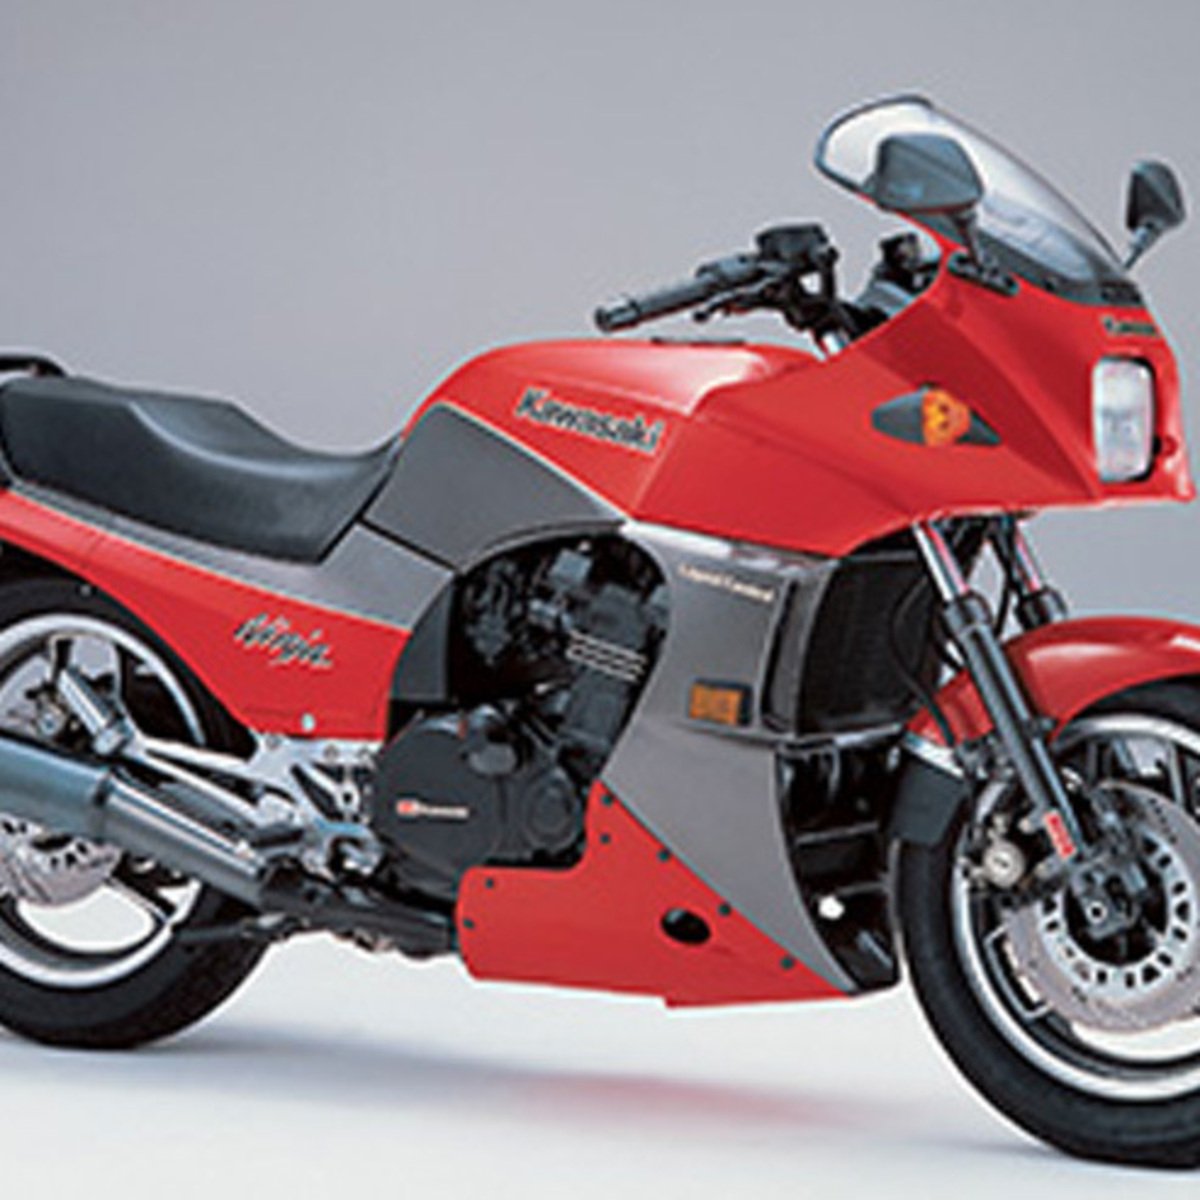 Kawasaki GPz 900 R